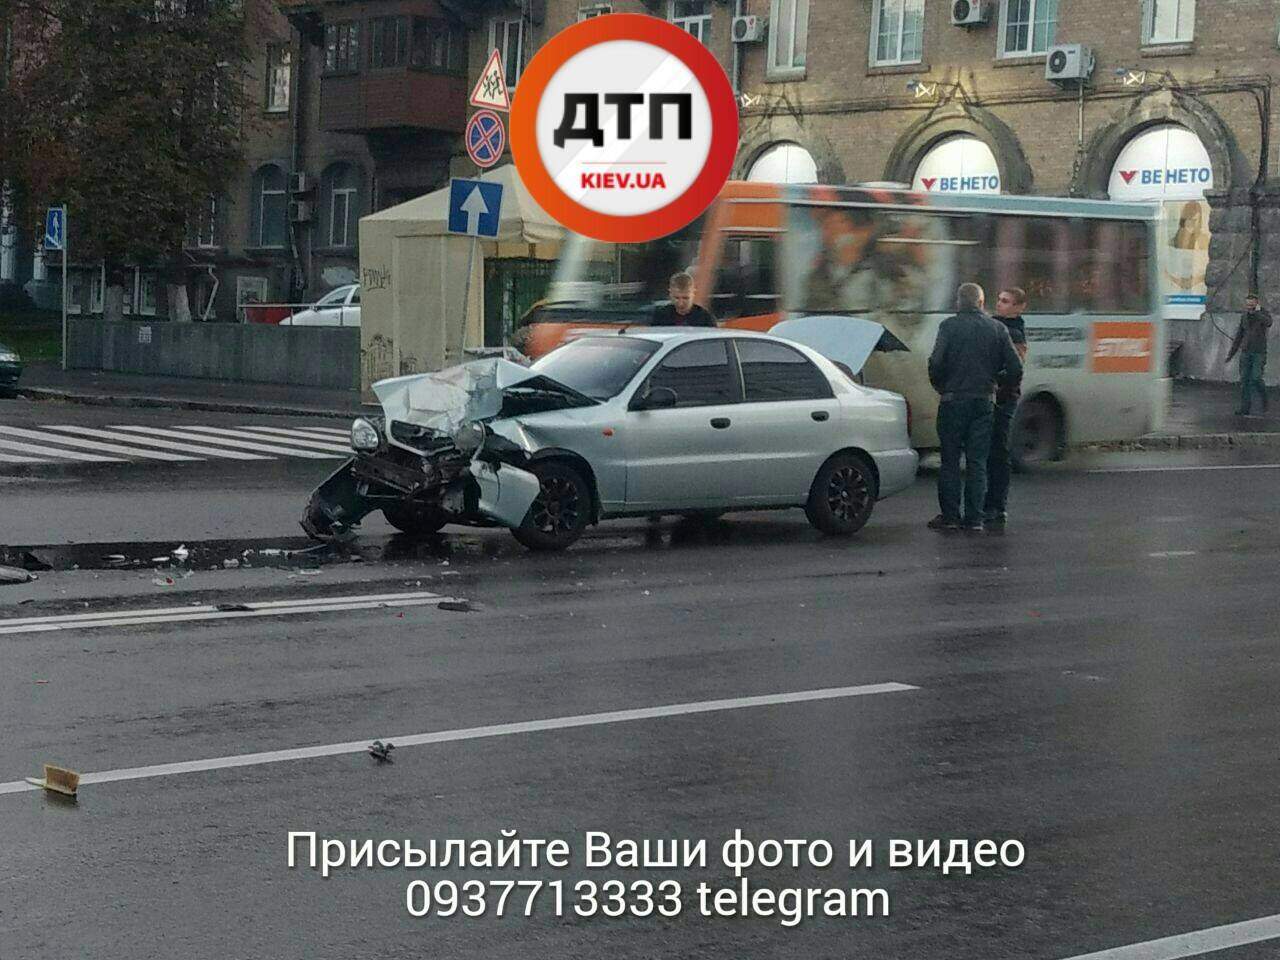 ДТП в Киеве: от удара автомобиль развернуло и отбросило на встречку (фото)